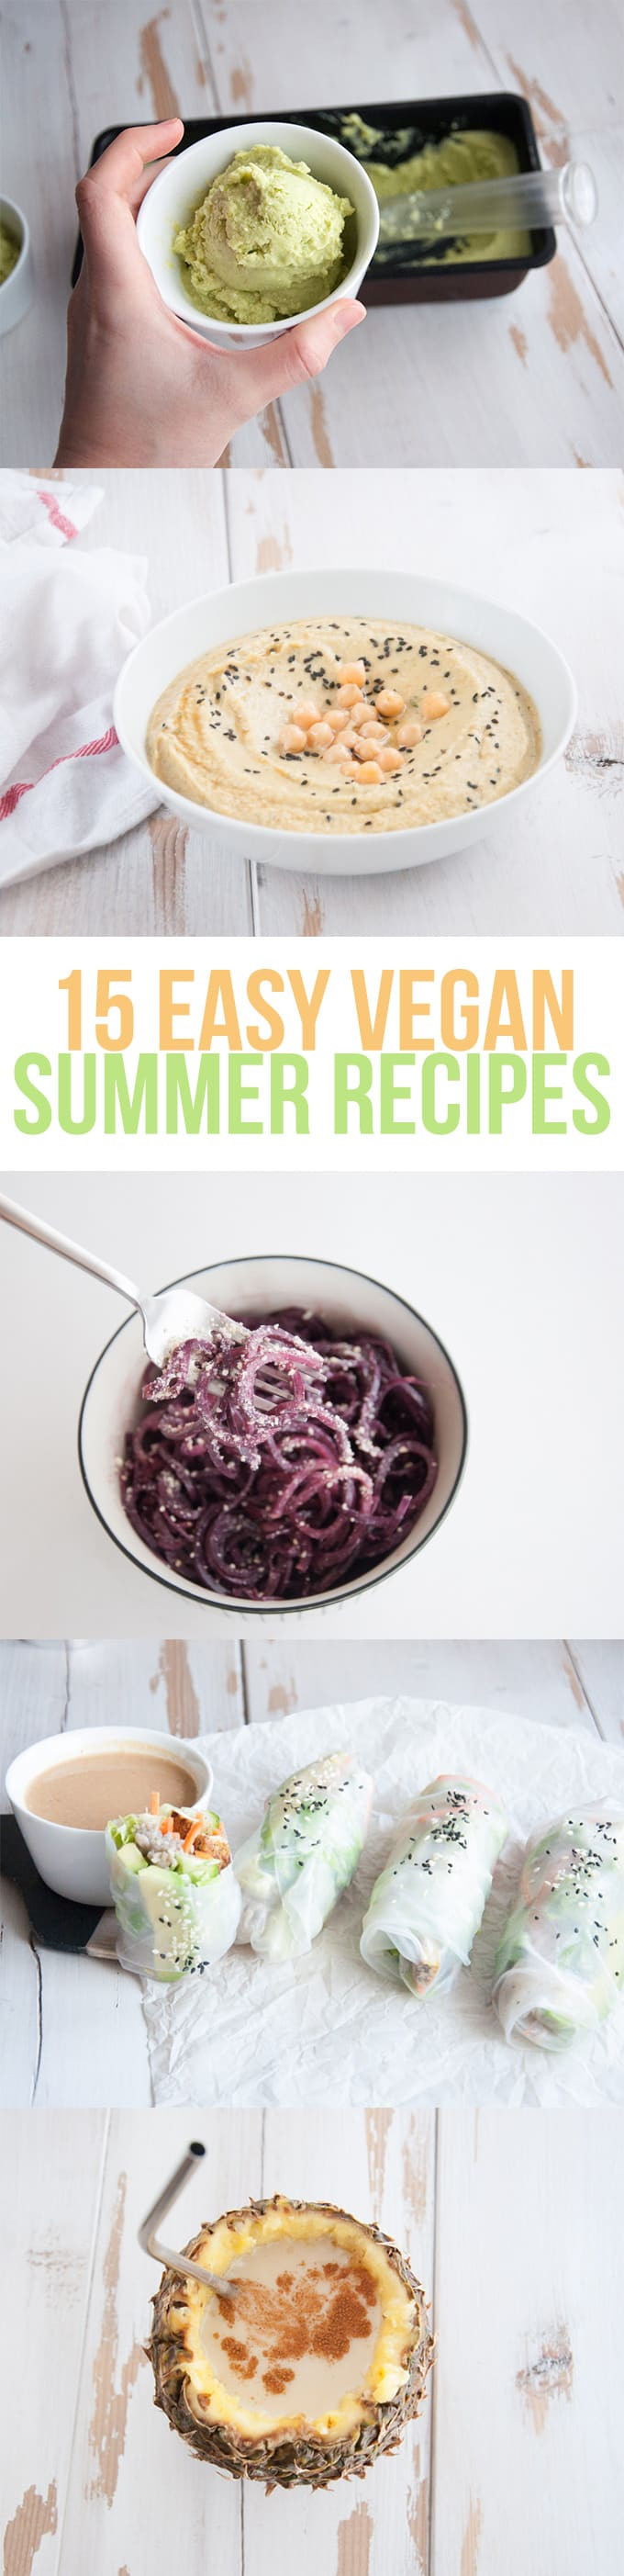 Easy Vegan Summer Recipes
 15 Easy Vegan Summer Recipes